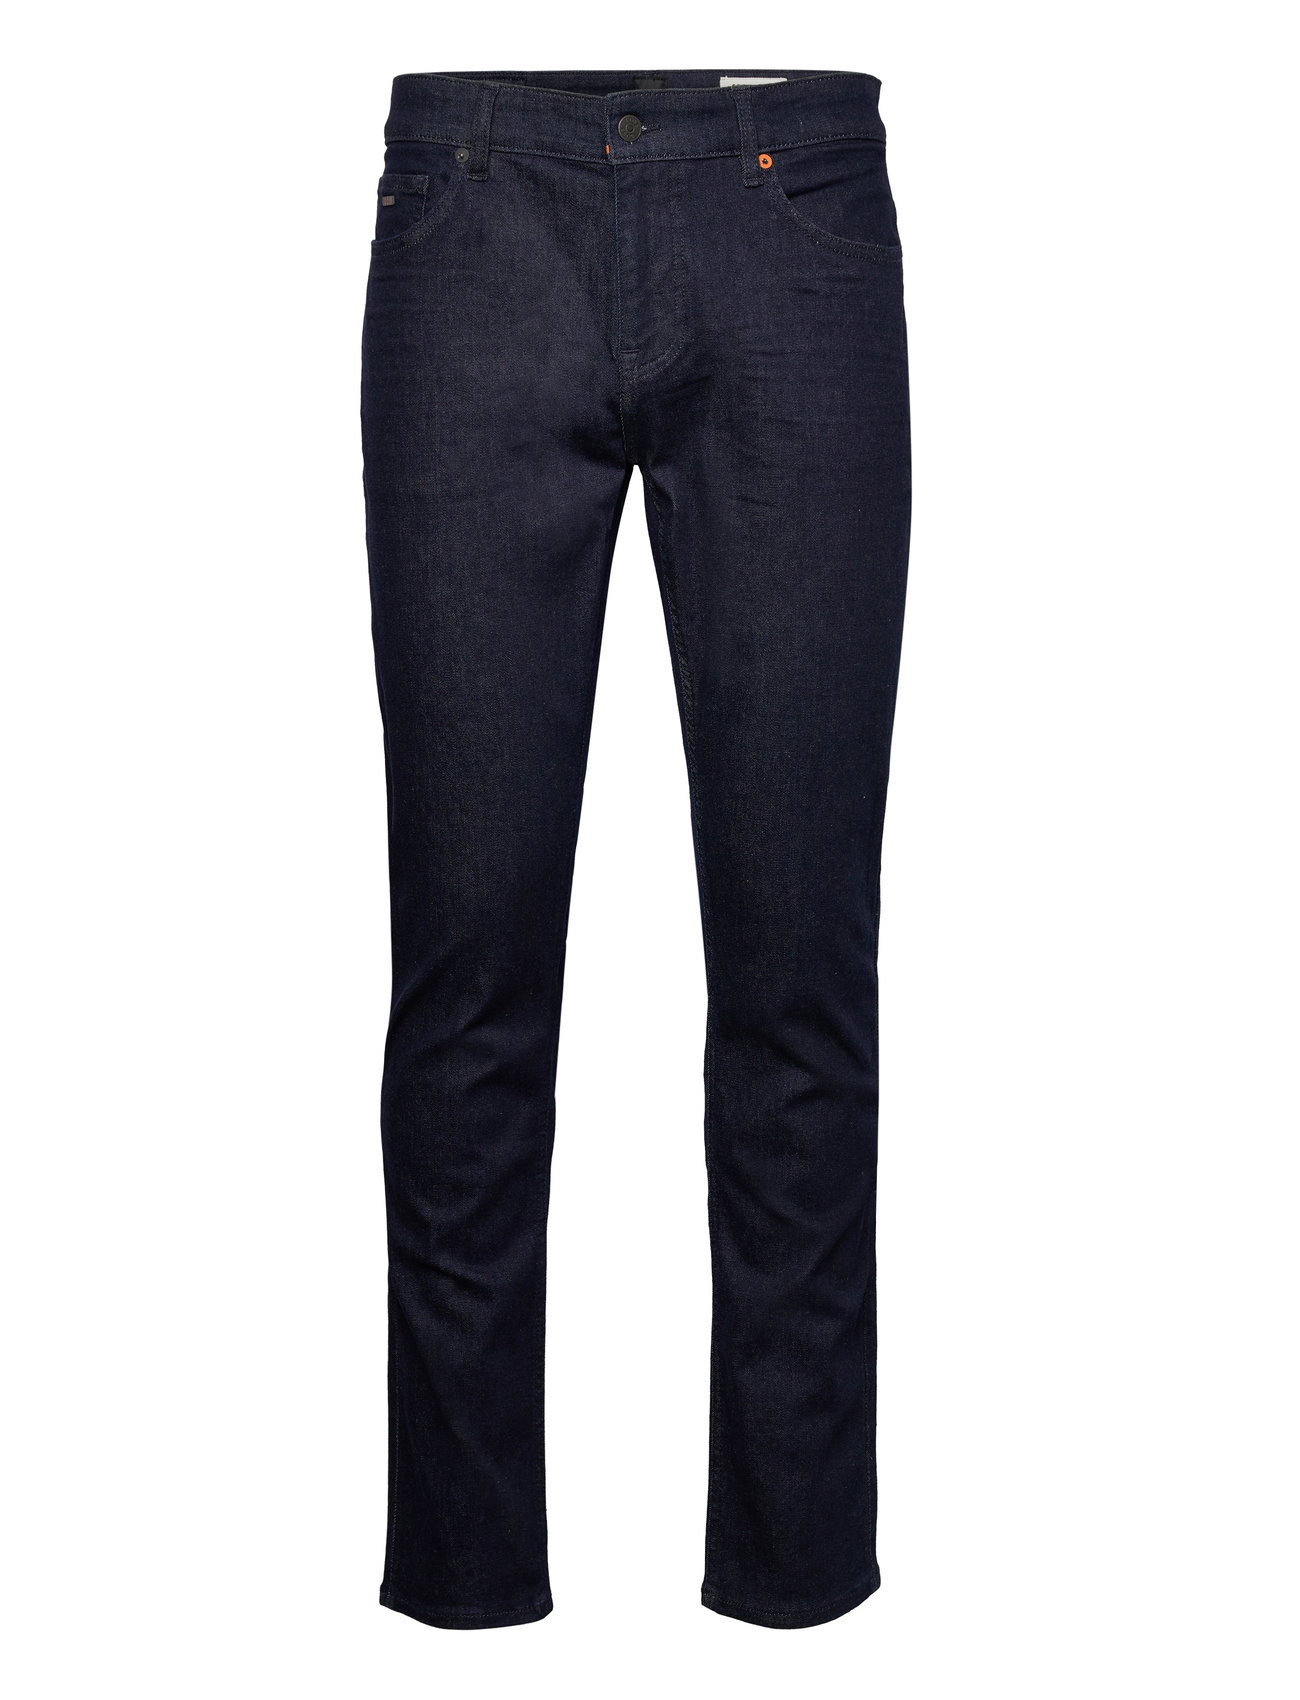 BOSS Bc-l-p - Slim jeans - Boozt.com